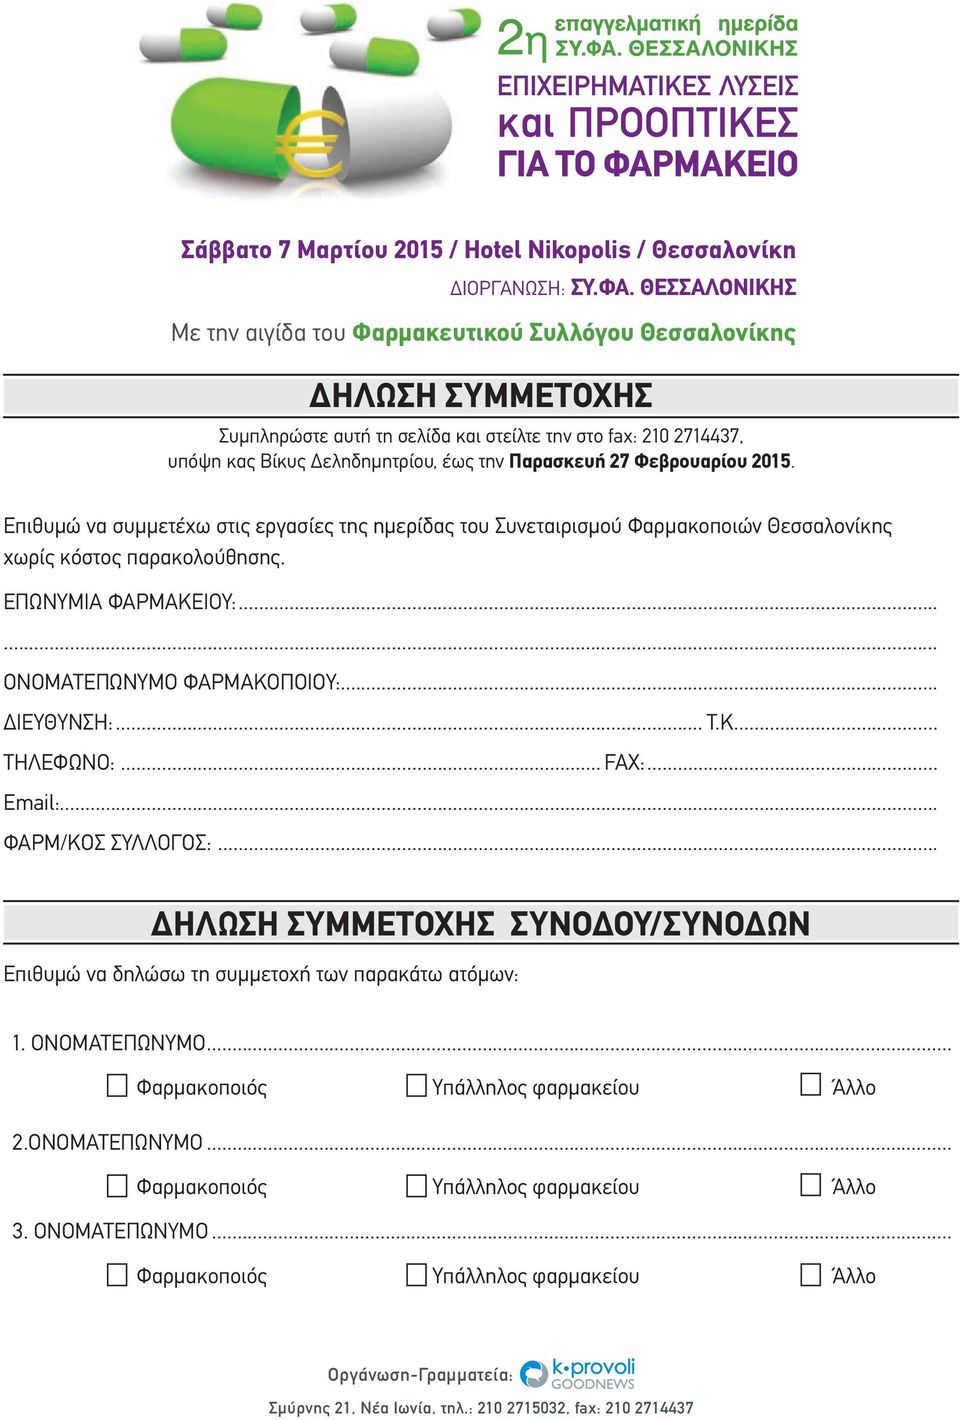 27 Φεβρουαρίου 2015. Επιθυμώ να συμμετέχω στις εργασίες της ημερίδας του Συνεταιρισμού Φαρμακοποιών Θεσσαλονίκης χωρίς κόστος παρακολούθησης. ΕΠΩΝΥΜΙΑ ΦΑΡΜΑΚΕΙΟΥ:...... ΟΝΟΜΑΤΕΠΩΝΥΜΟ ΦΑΡΜΑΚΟΠΟΙΟΥ:.